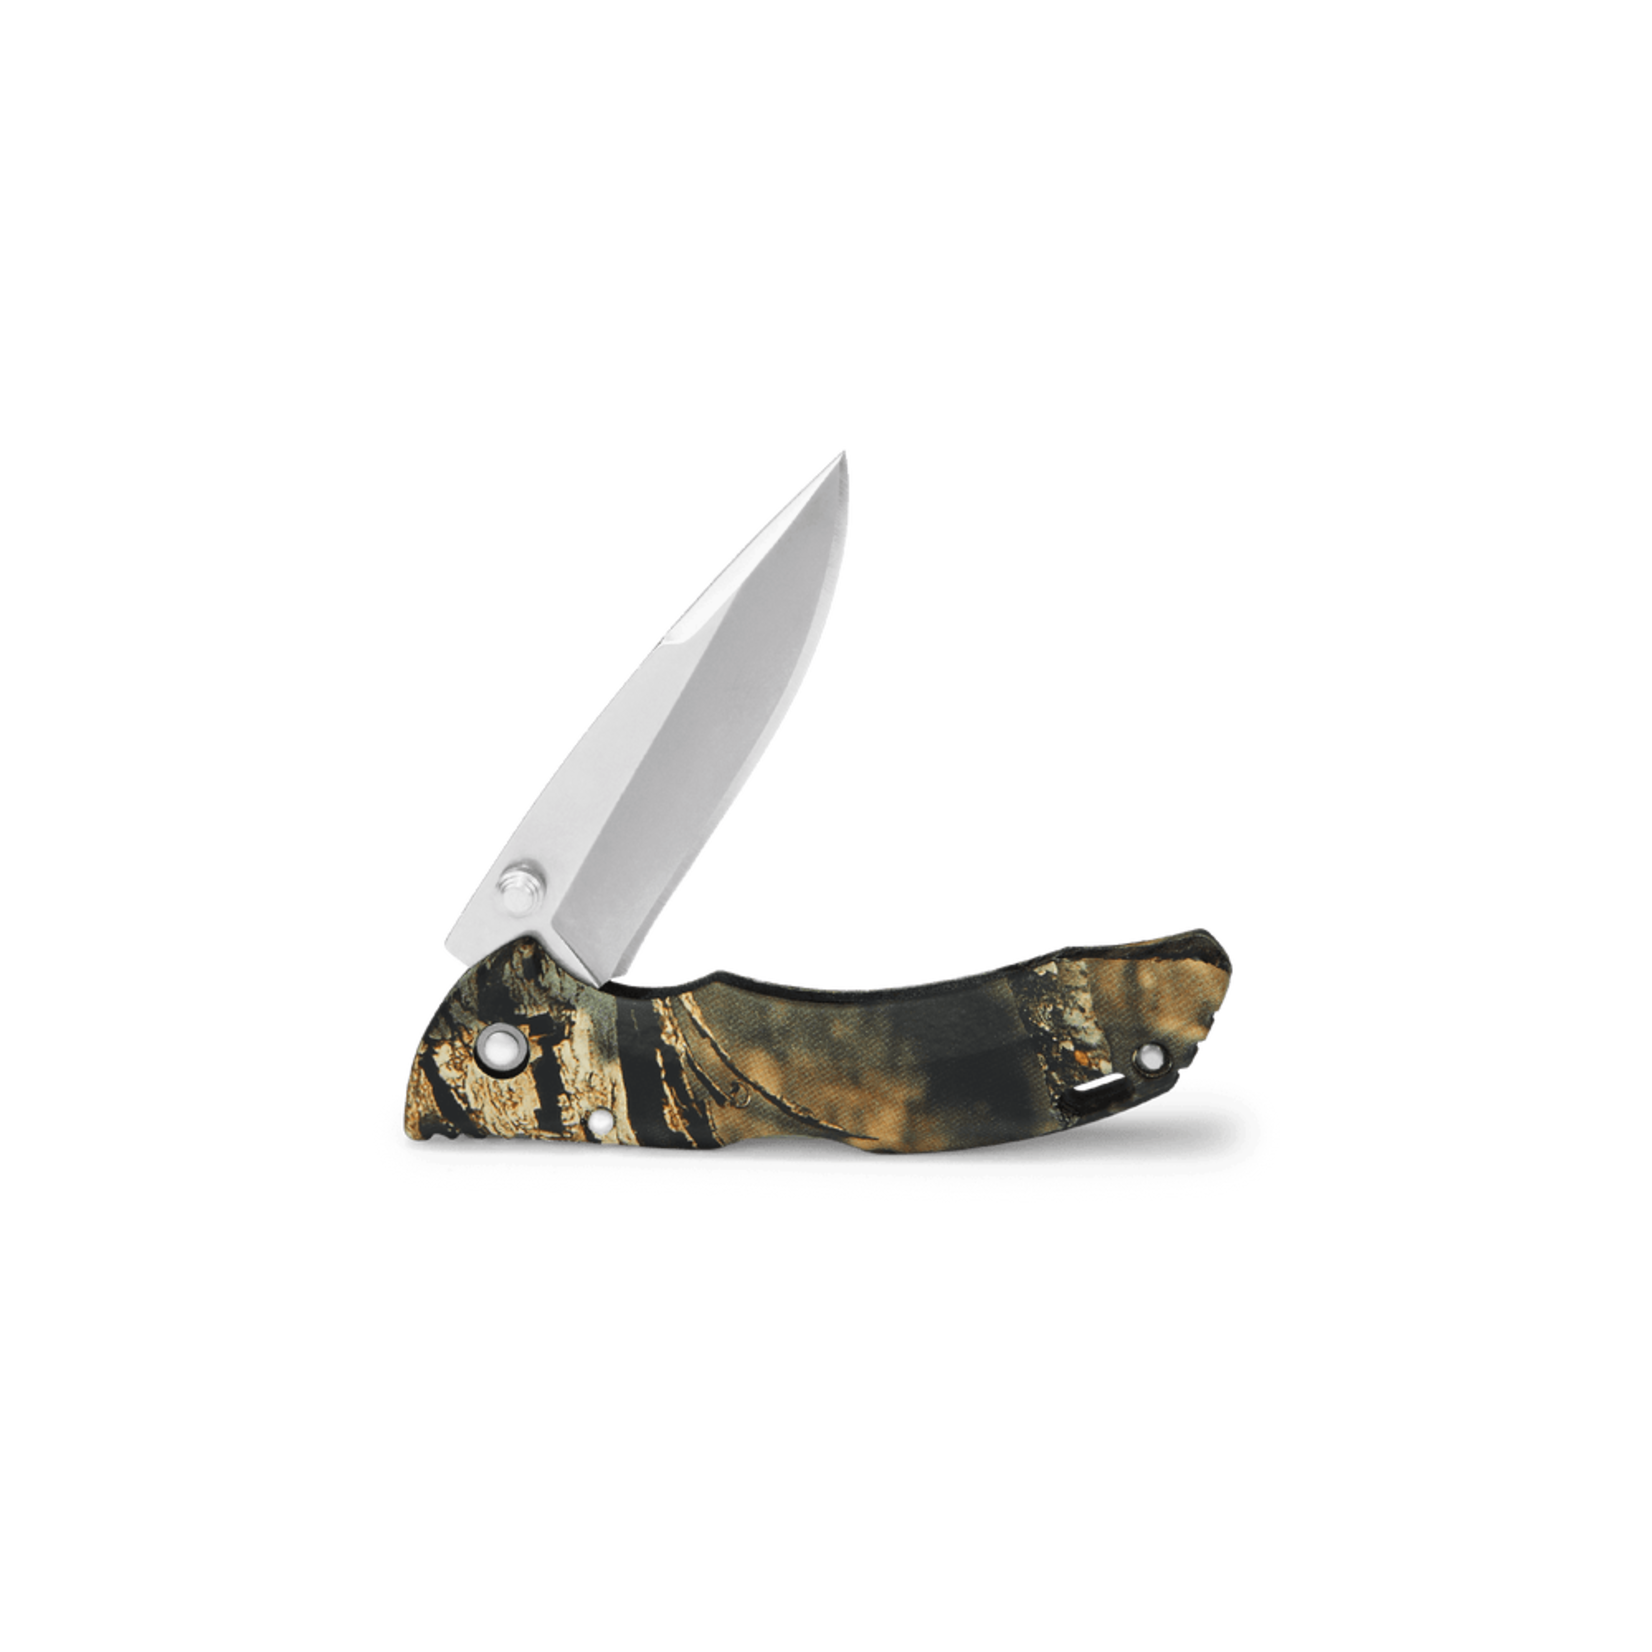 Buck Buck knives - 284 Bantam Pocket Knife - Mossy Oak - Clamshell Package - Forever Warranty